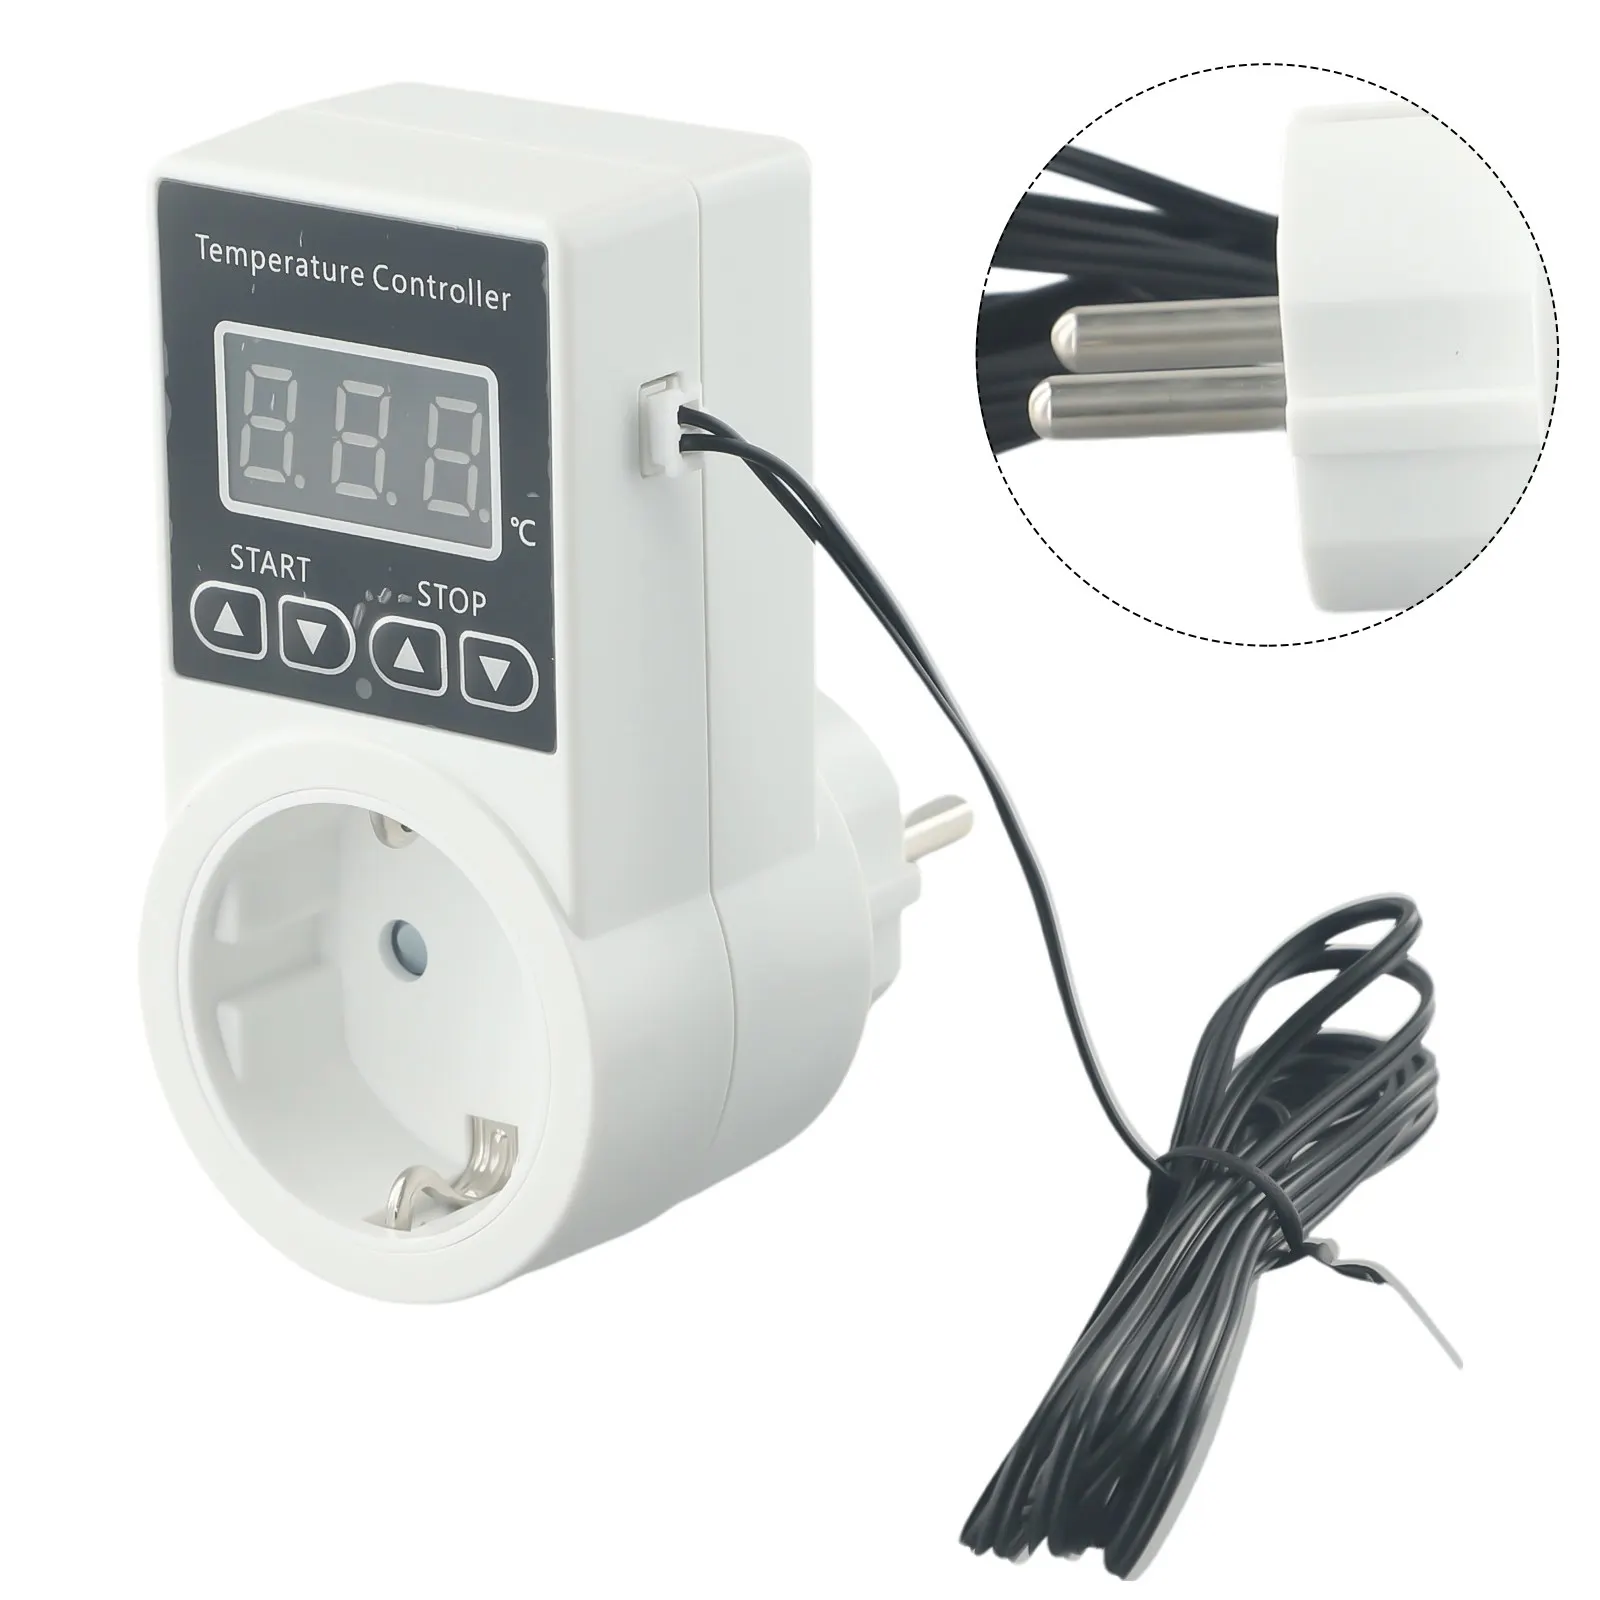 온실용 온도 스위치 온도조절기 소켓, LCD 디스플레이 온도 컨트롤러, 디지털 EU 플러그, 100-240V AC